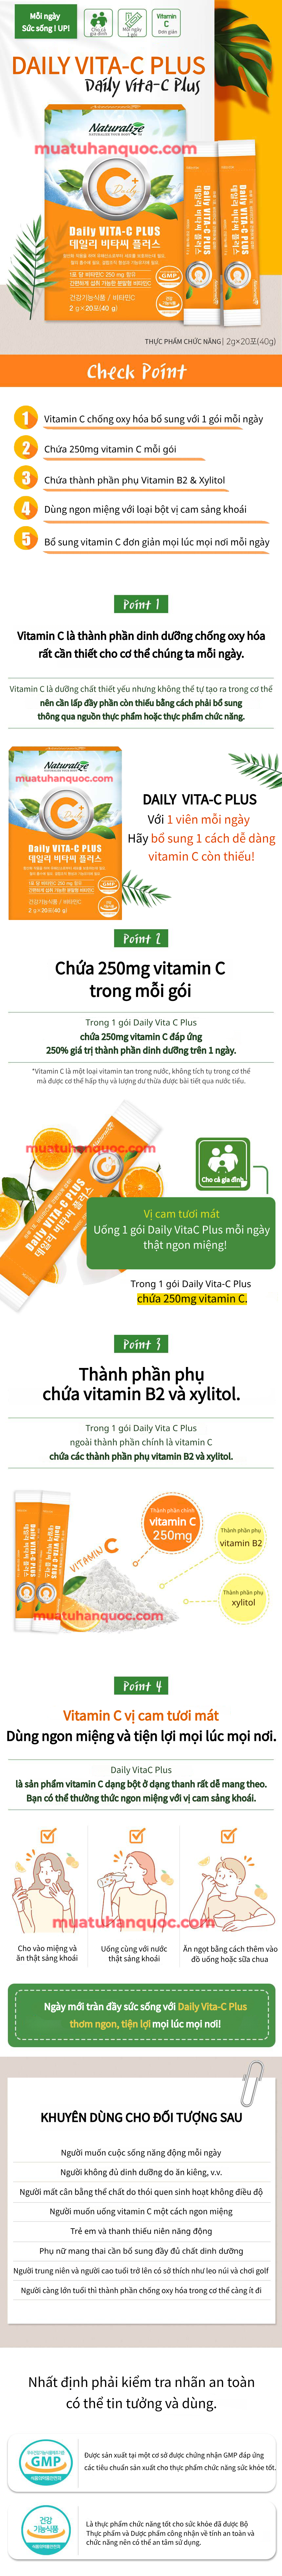 Mua Từ Hàn Quốc Thực Phẩm Bổ Sung Vitamin C Naturalize Mua Từ Hàn Quốc